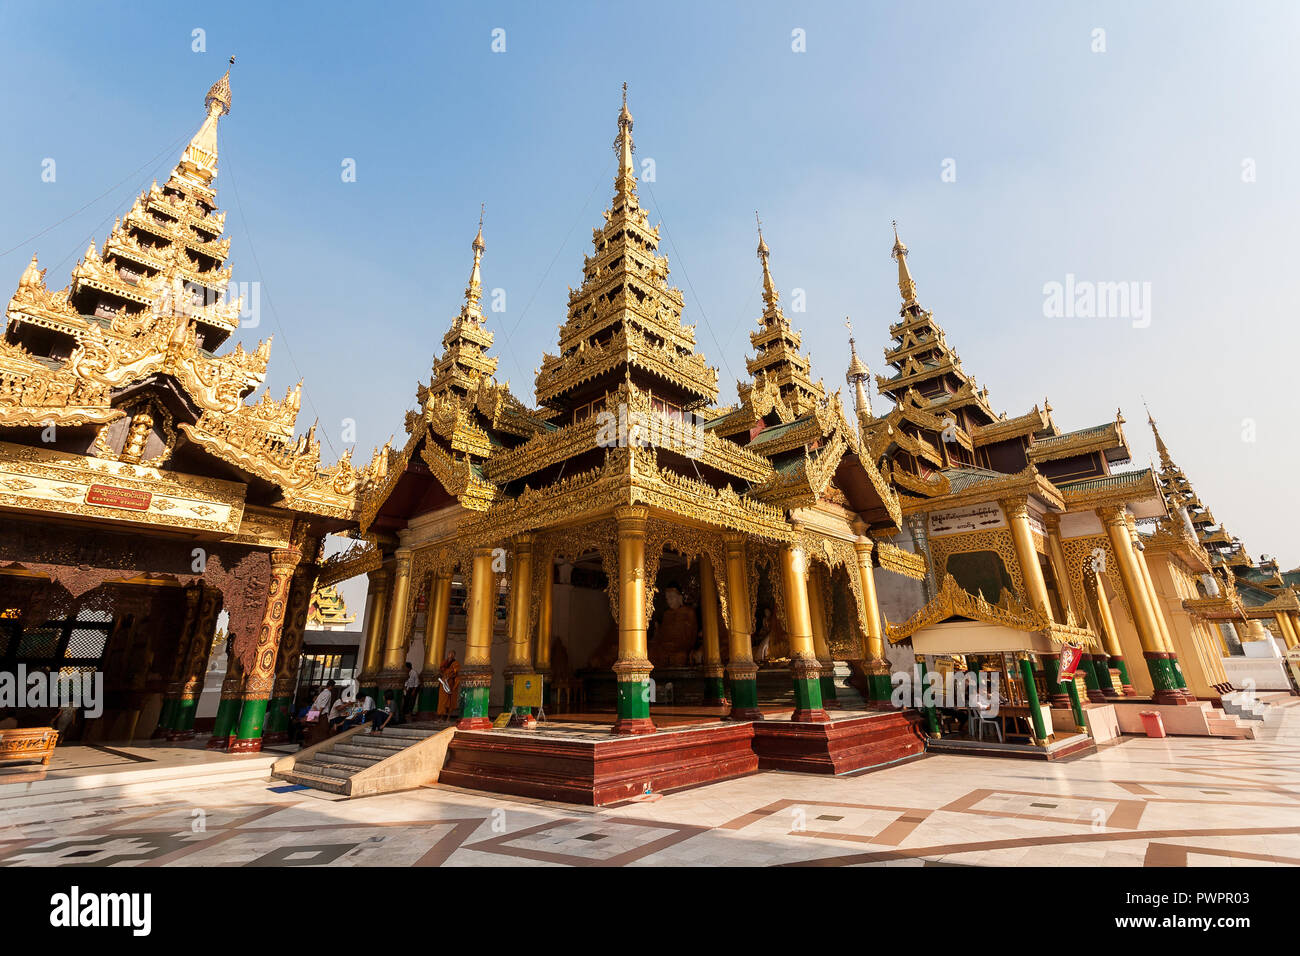 Shwedagon pagoda, Yangon, Myanmar Stock Photo